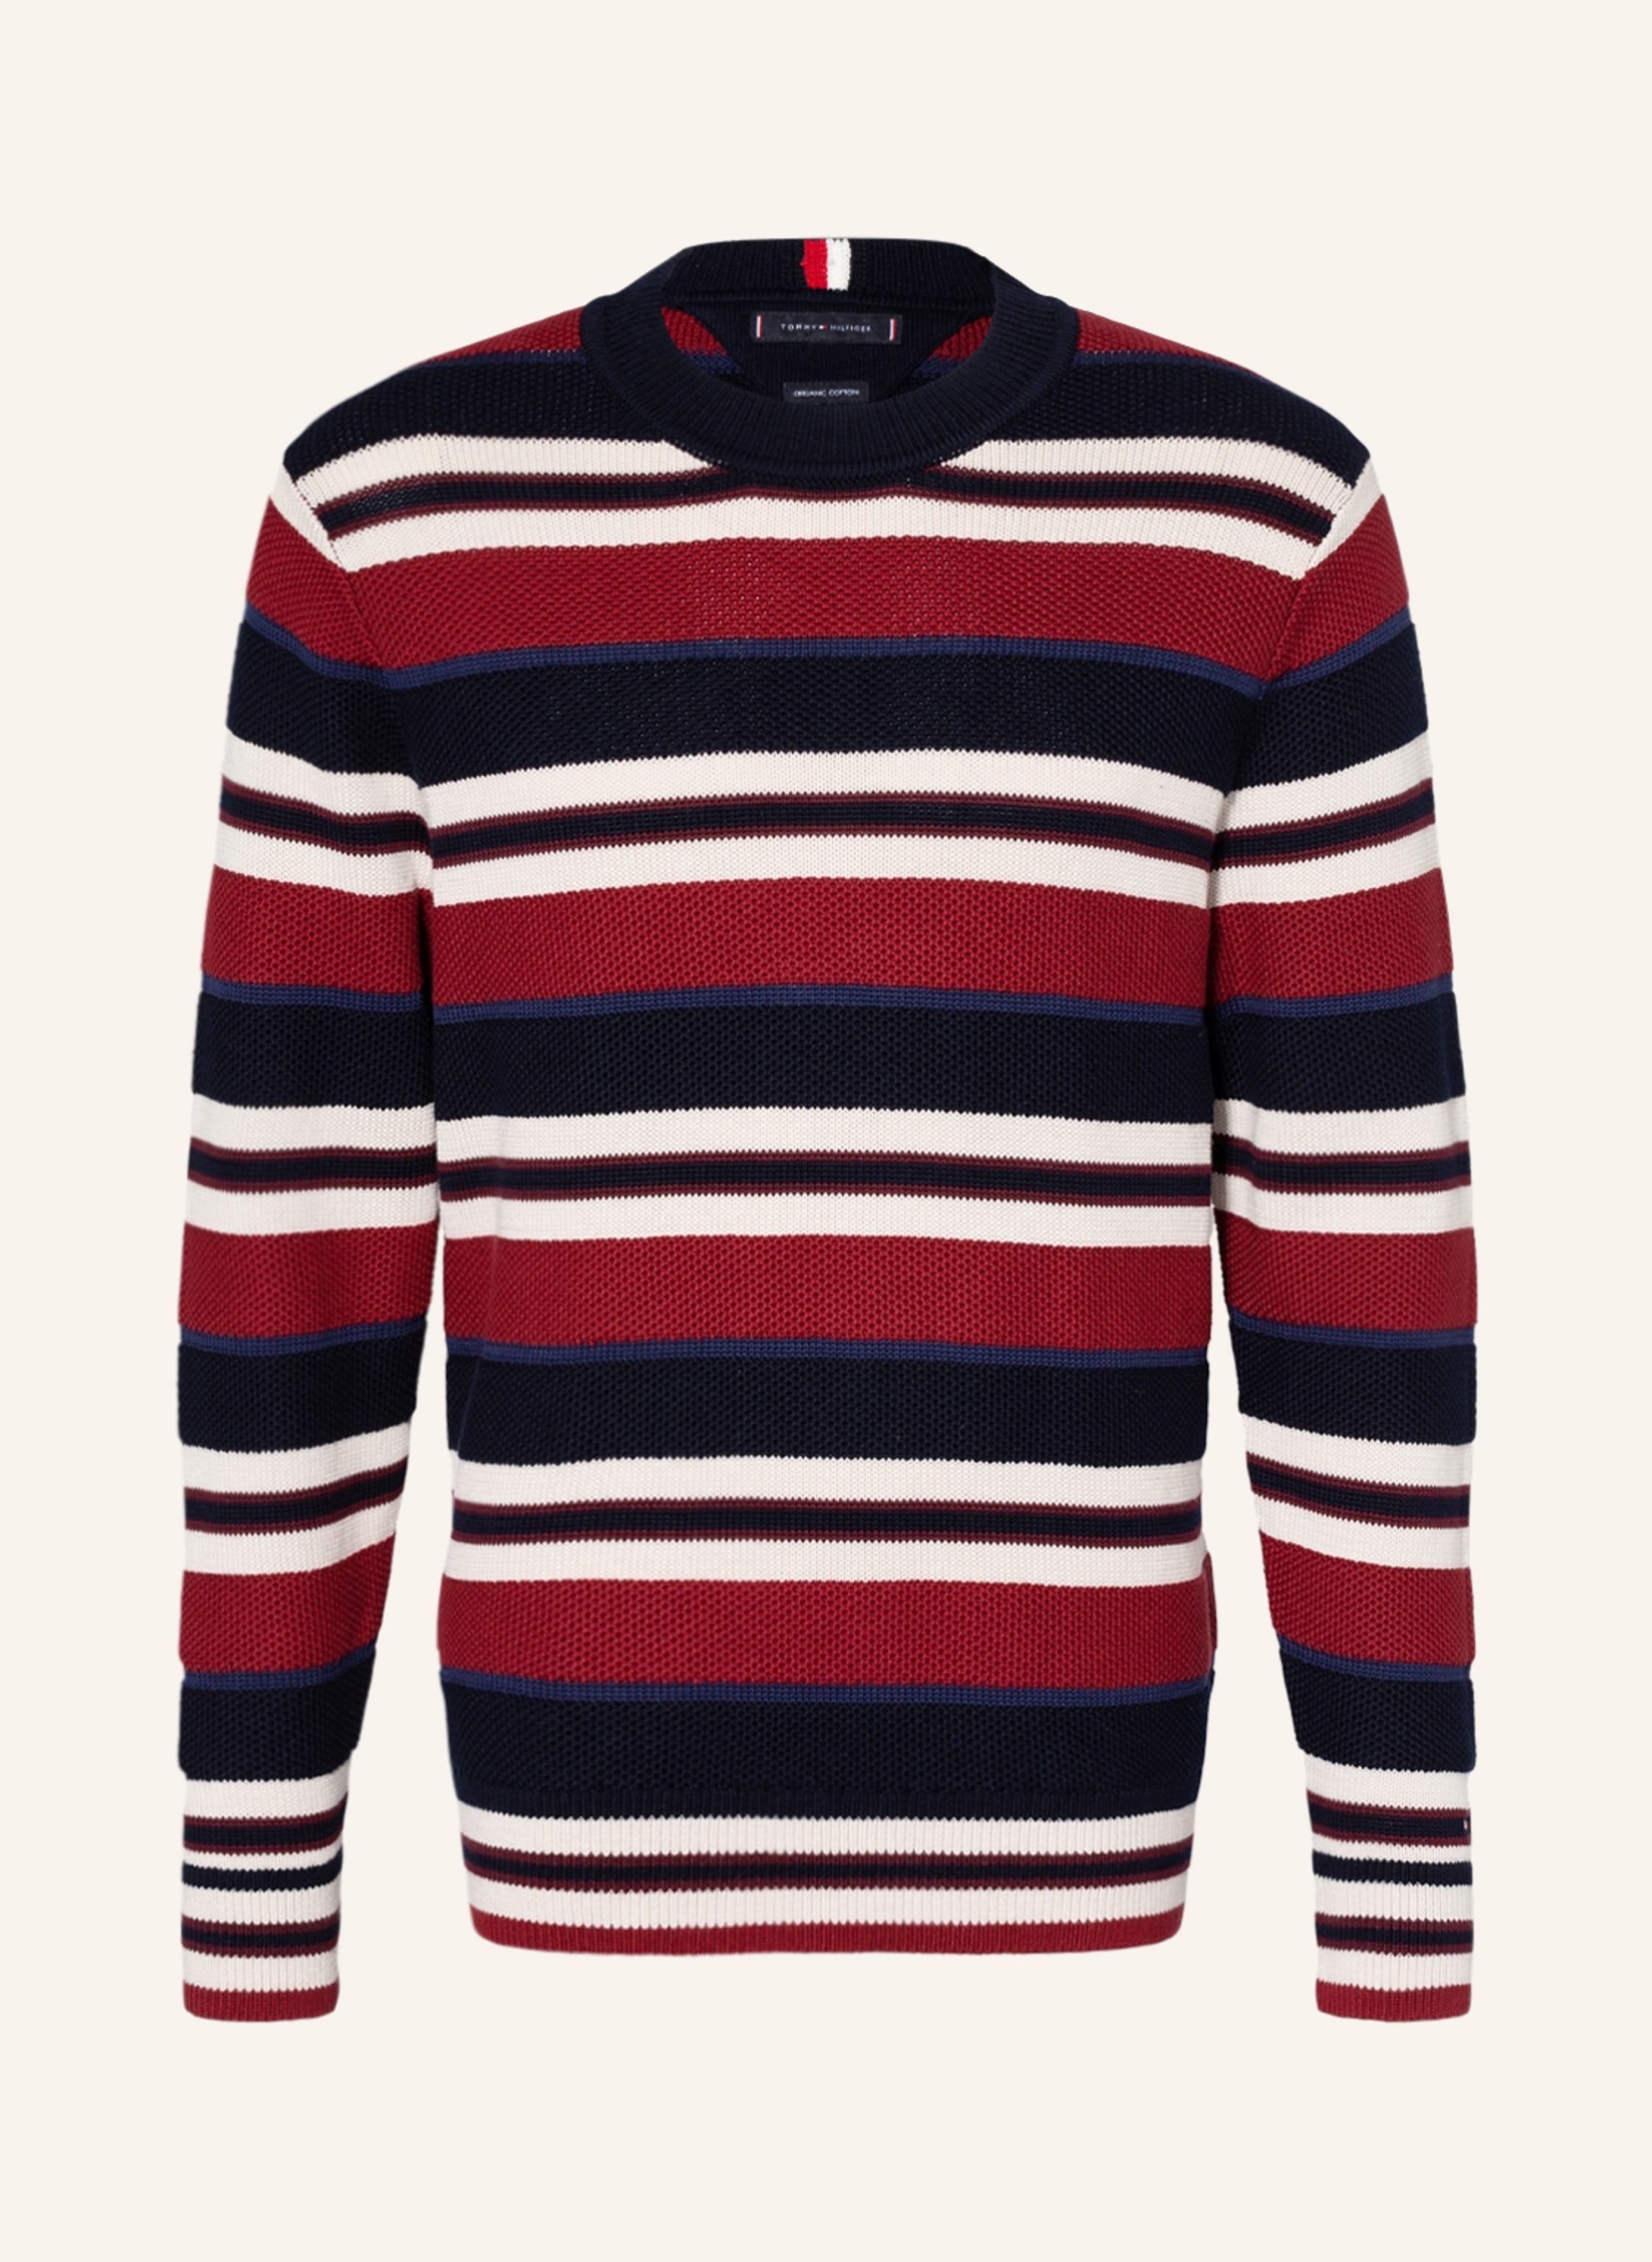 TOMMY HILFIGER Sweater dark blue/ dark red/ white | Breuninger